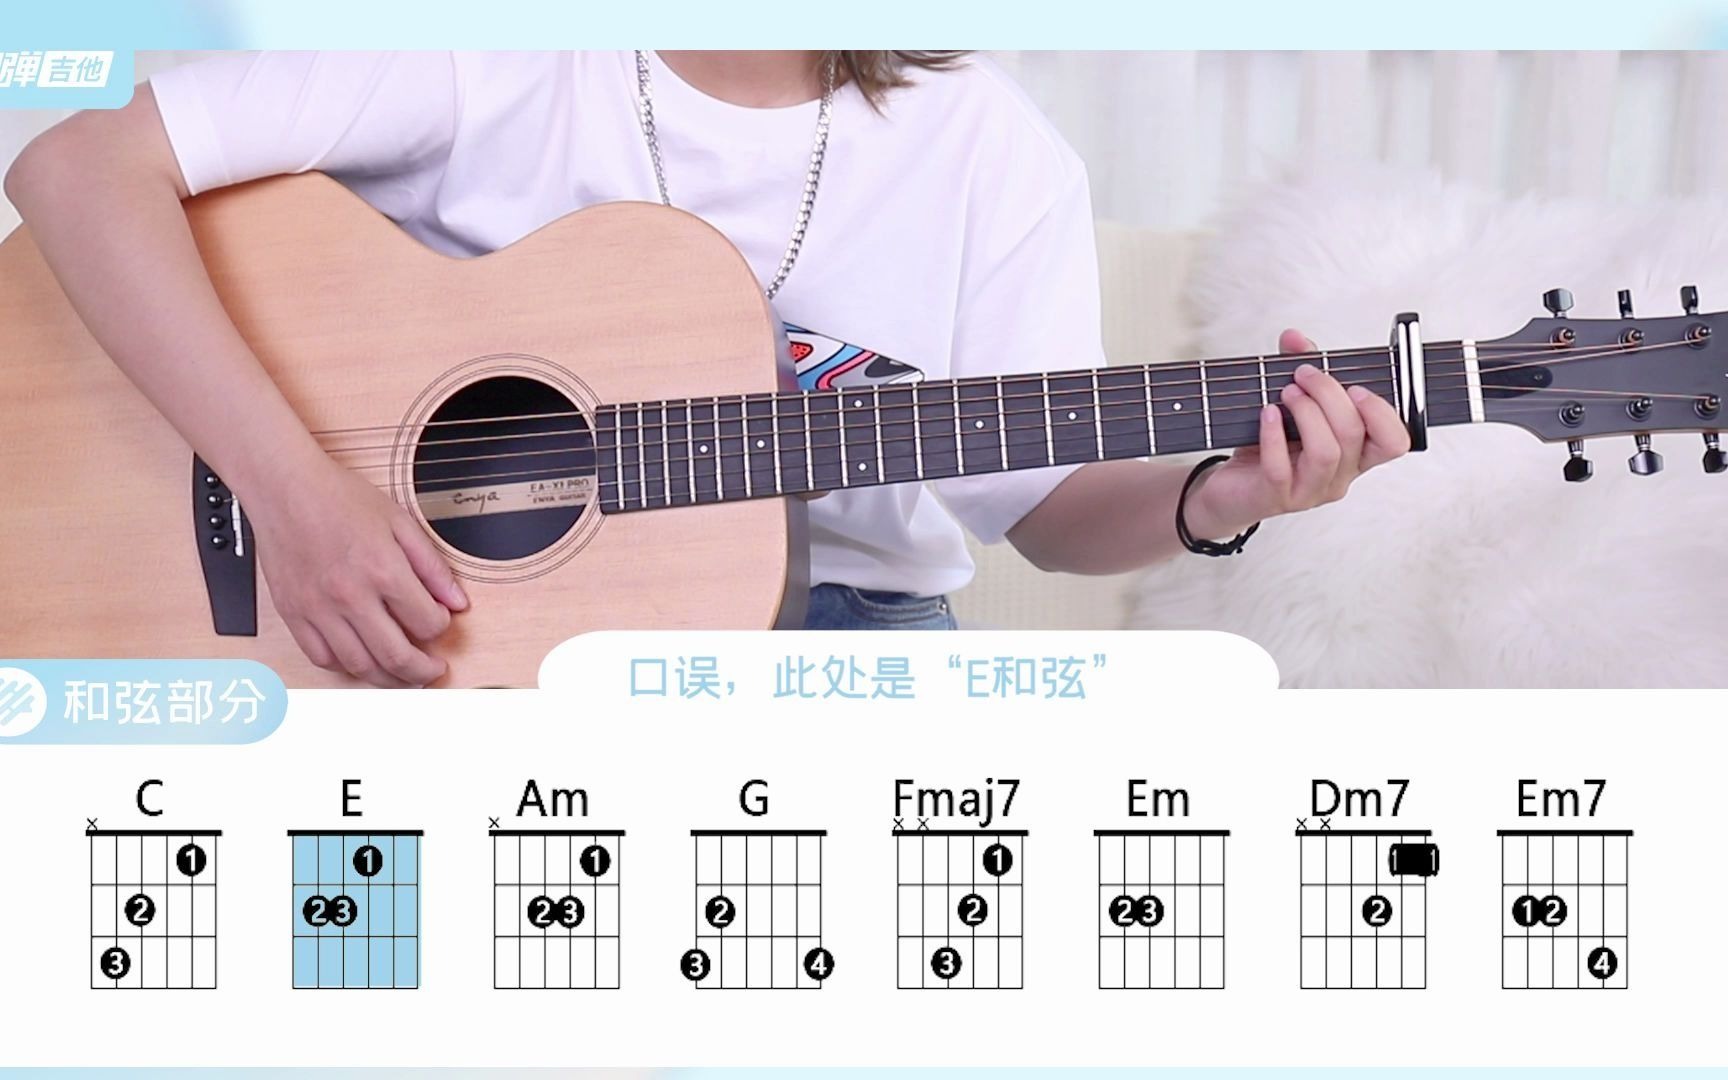 零基础新手吉他自学教程！第二课：吉他调音与识谱教学【研音音乐吉他课】 - 哔哩哔哩